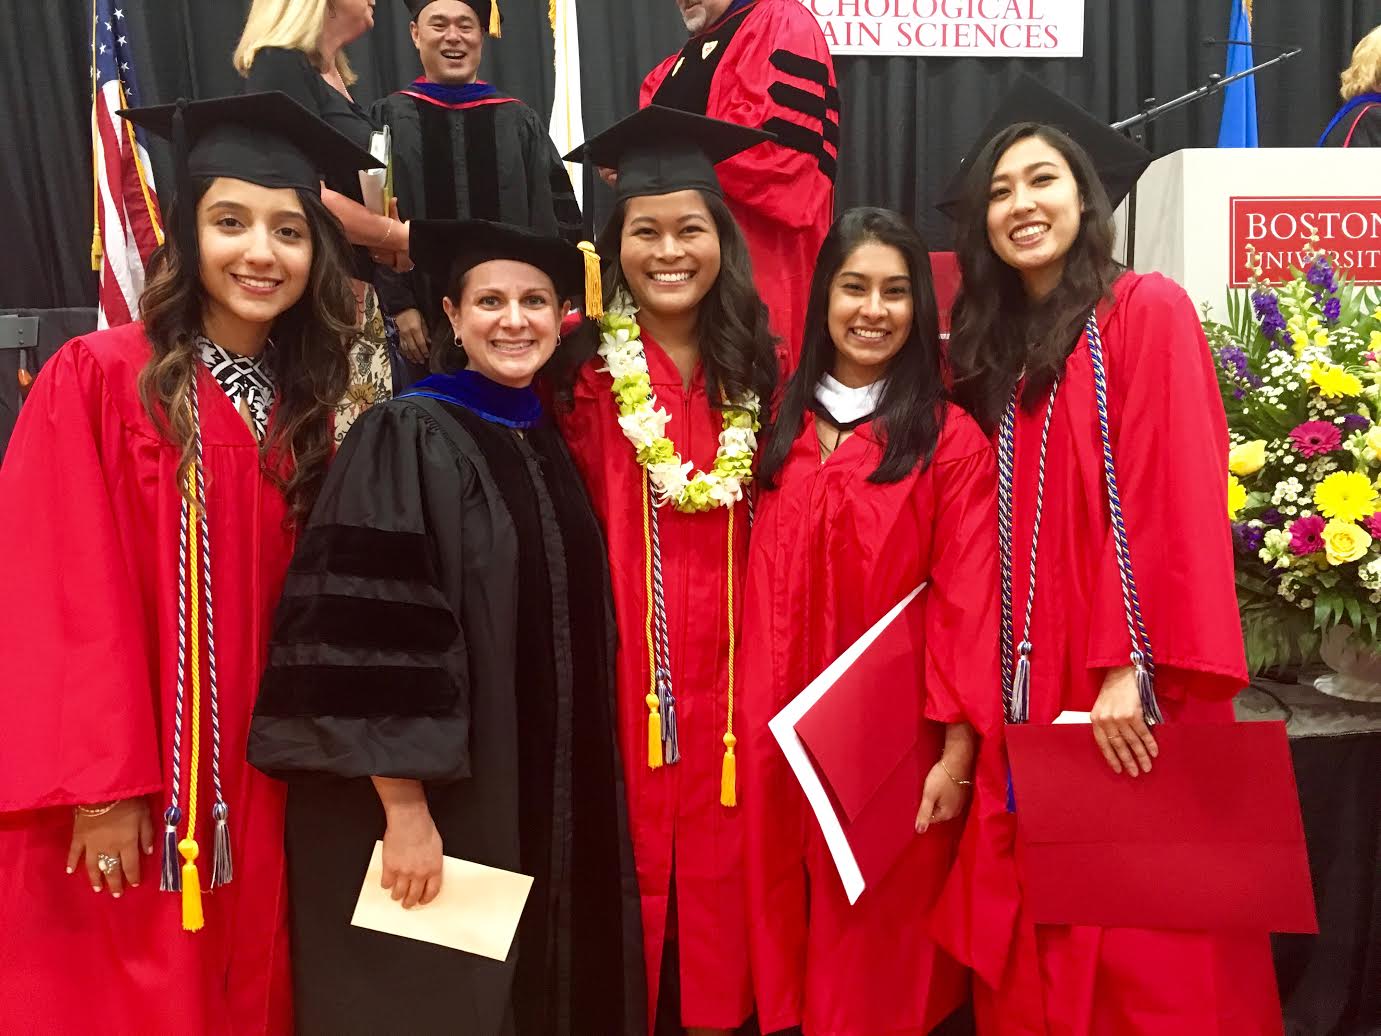 alt="photo of Director with Recent Graduates of Lab in Graduation Regalia."